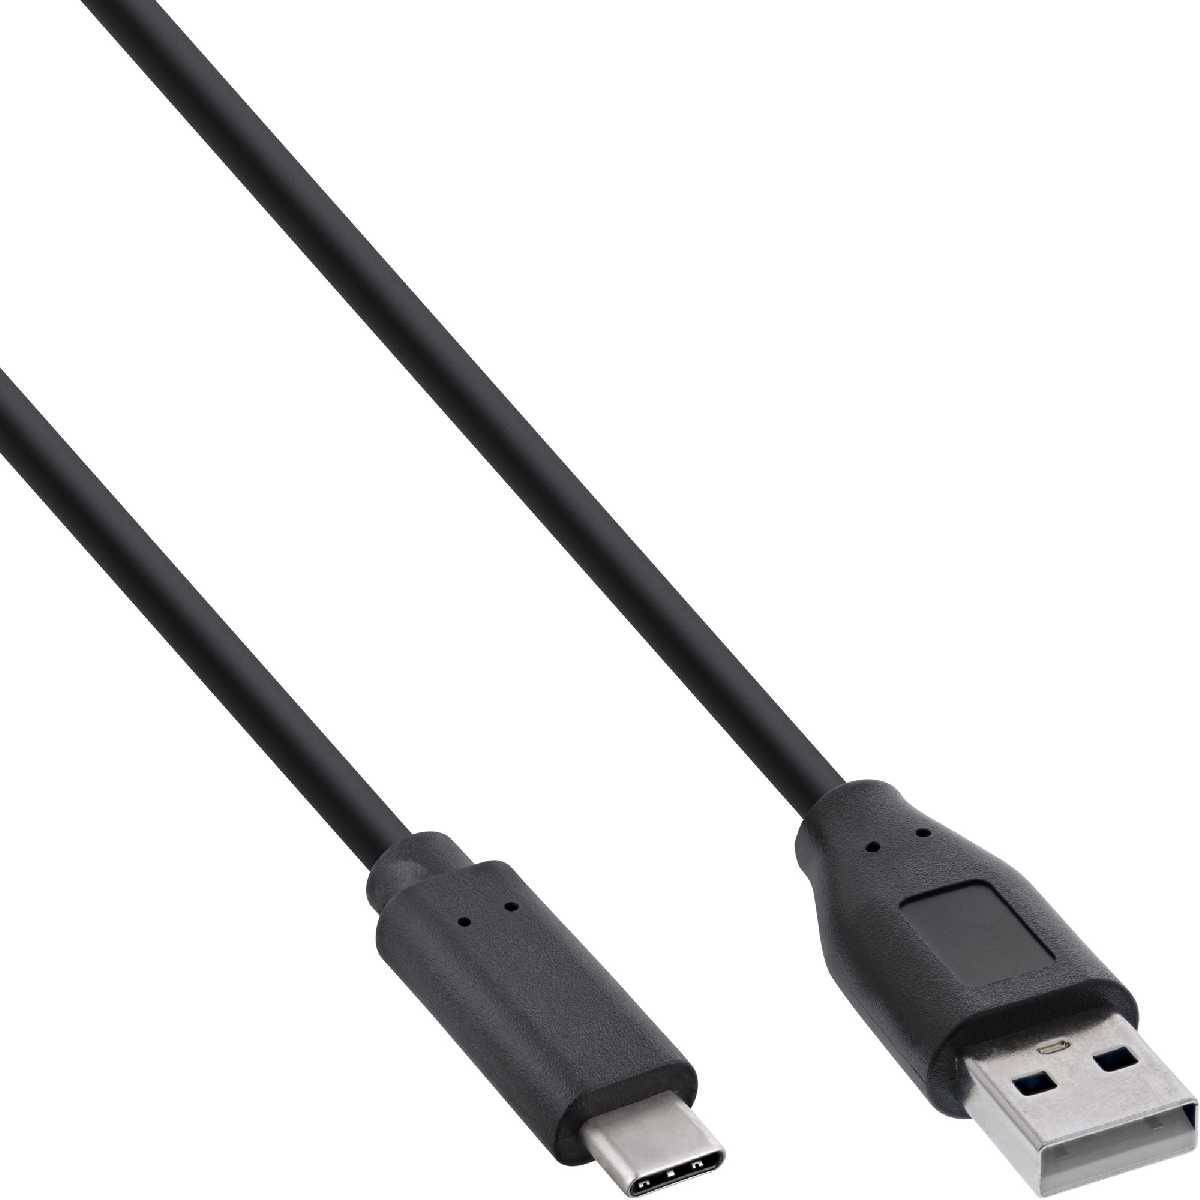 USB2 USB 2.0 Kabel USB-C Stecker an A Stecker schwarz 3m